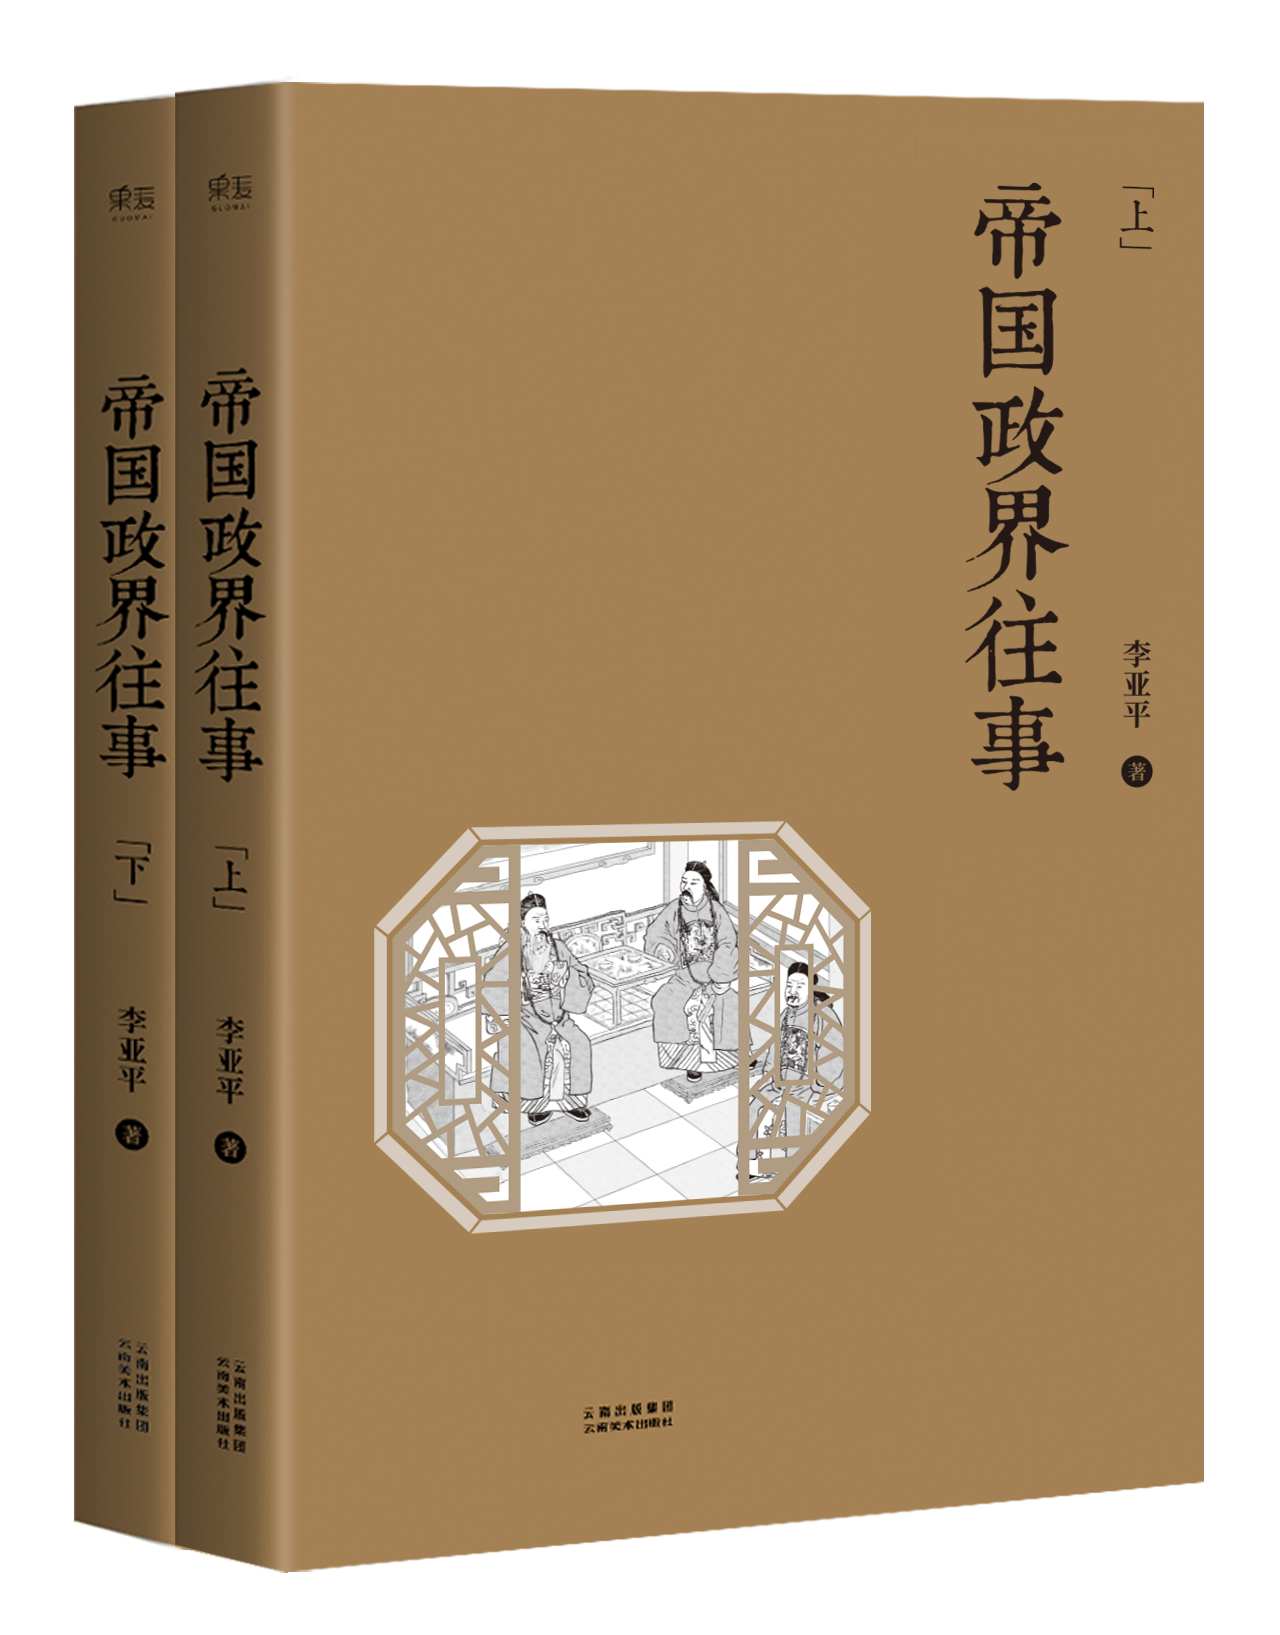 帝國政界往事(2014年天津人民出版社版本)